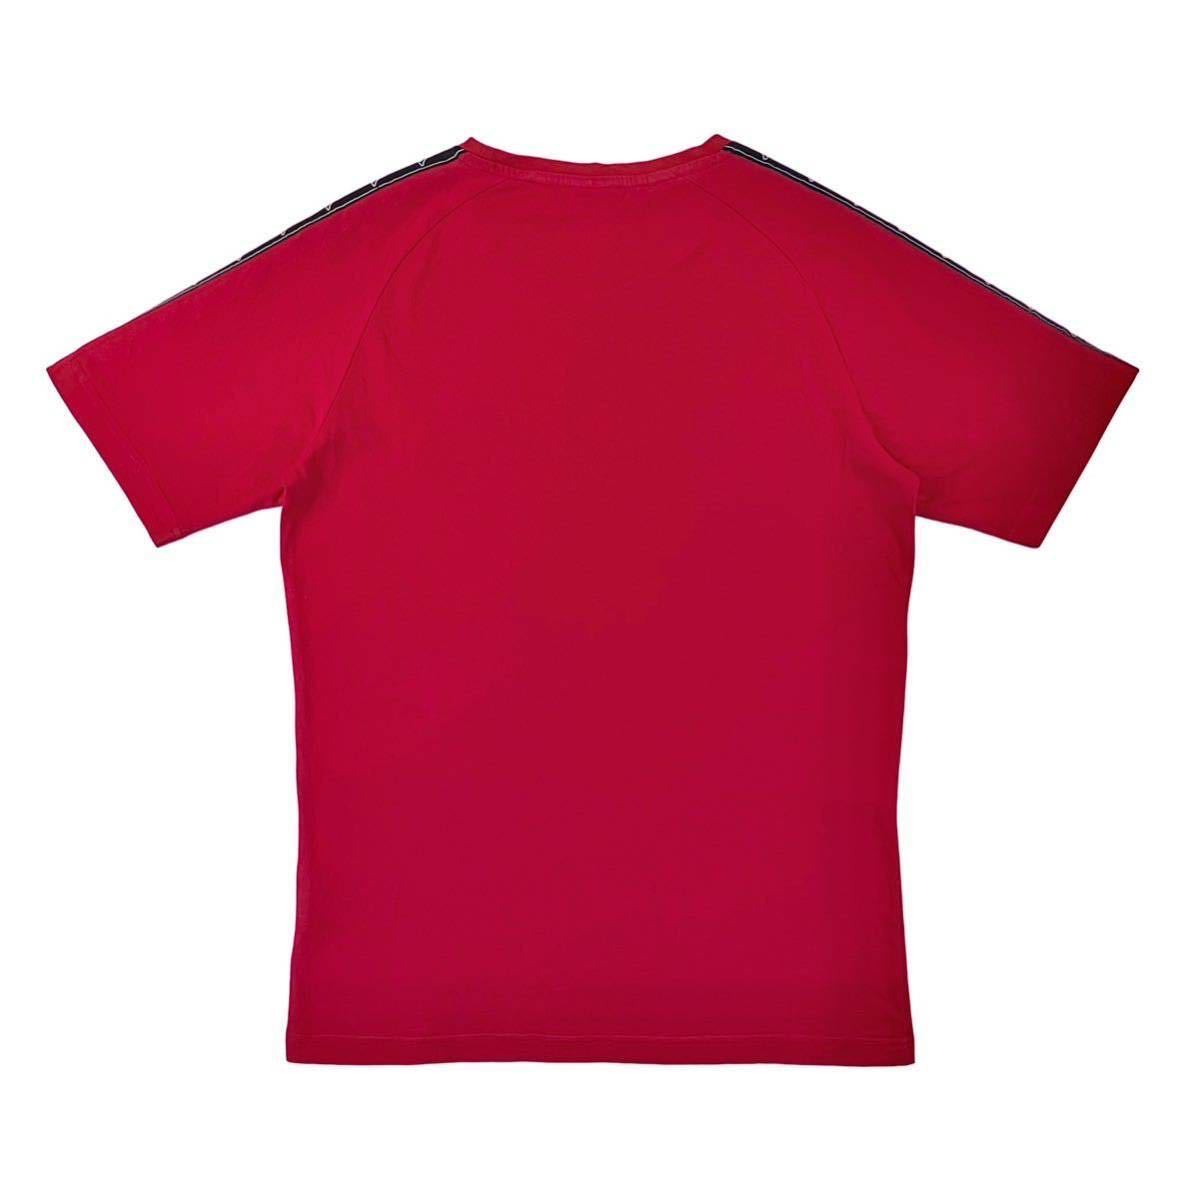 中古 MARCELO BURLON × kappa マルセロ バーロンブロン ×カッパ コラボ 胸ワンポイント 刺繍 BANDA バンダ  肩テープライン Tシャツ 赤 M